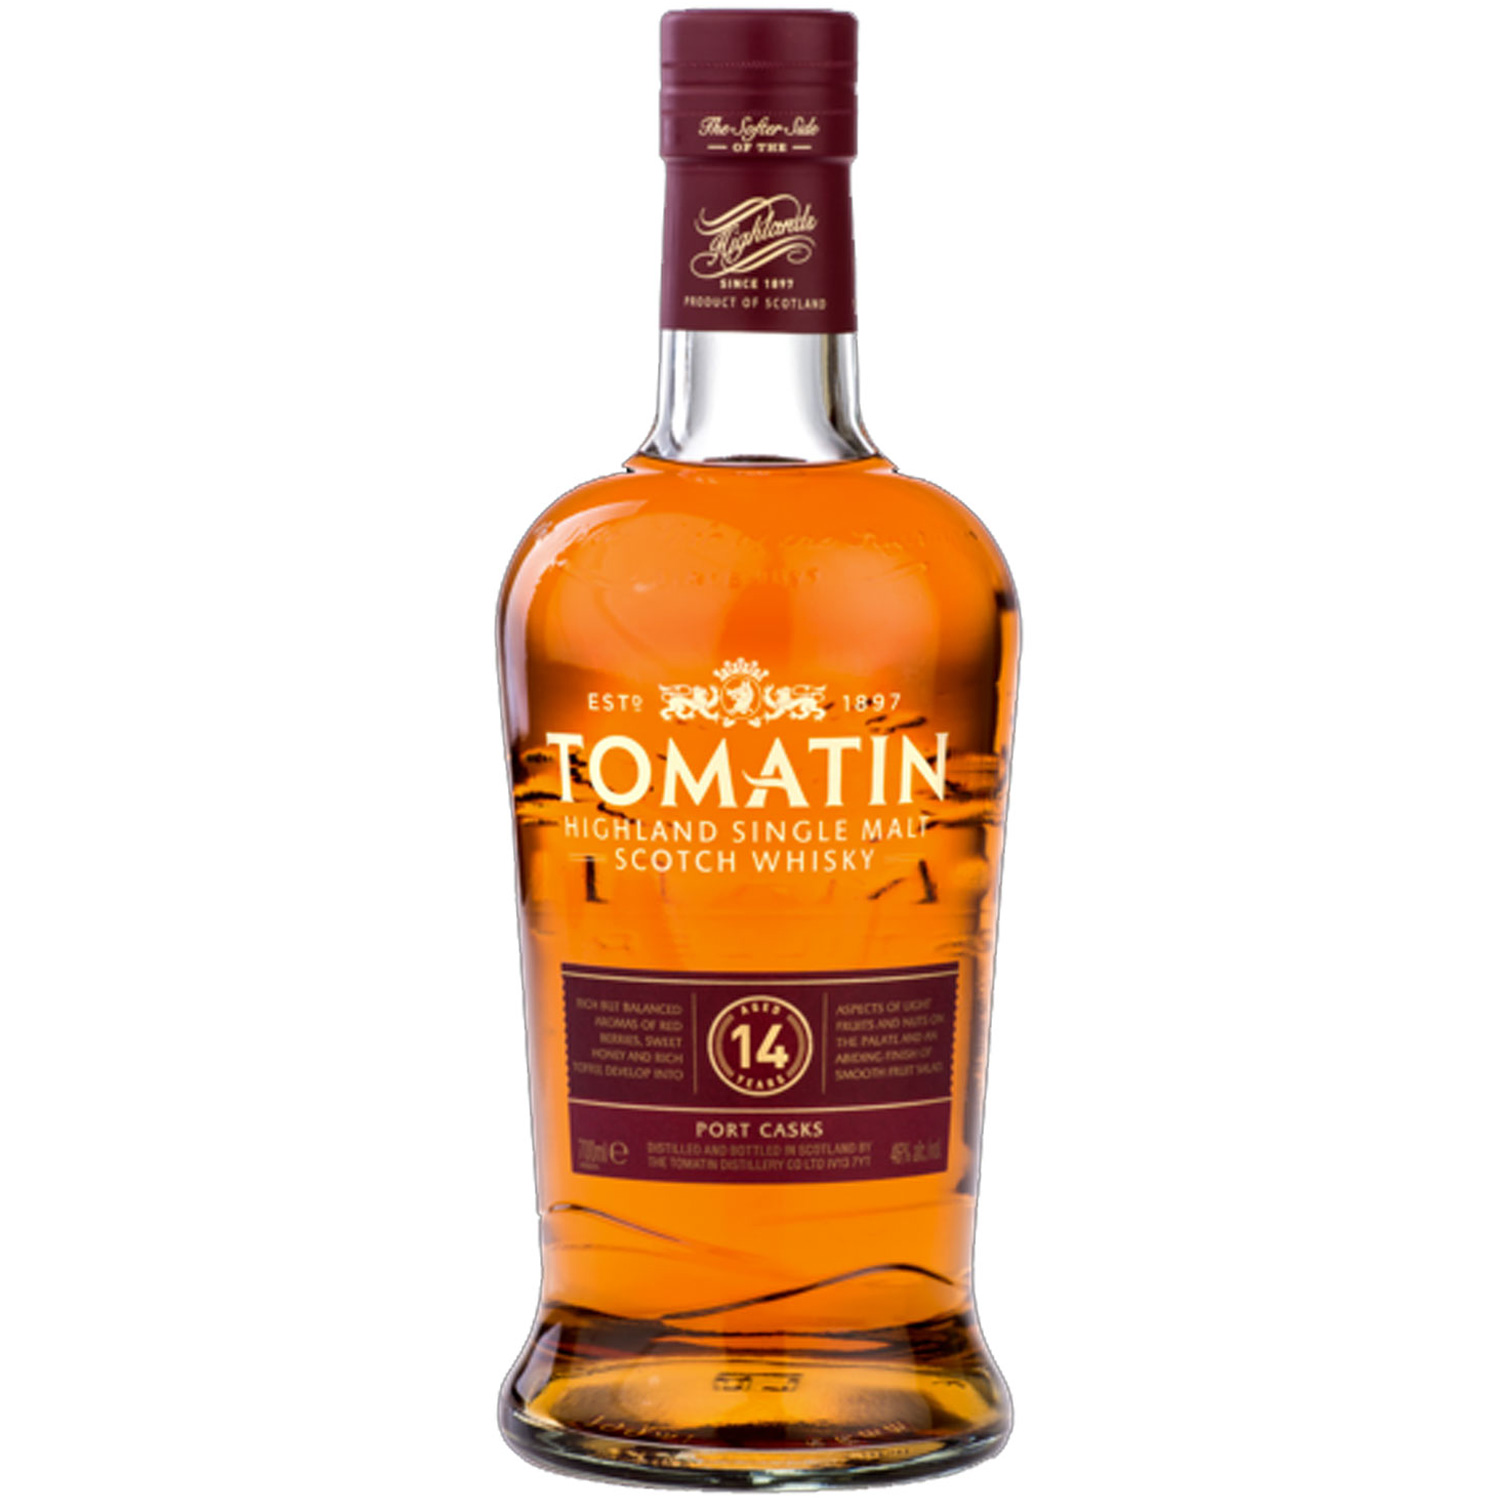 Tomatin 14 Highland Single Malt Scotch Whisky 